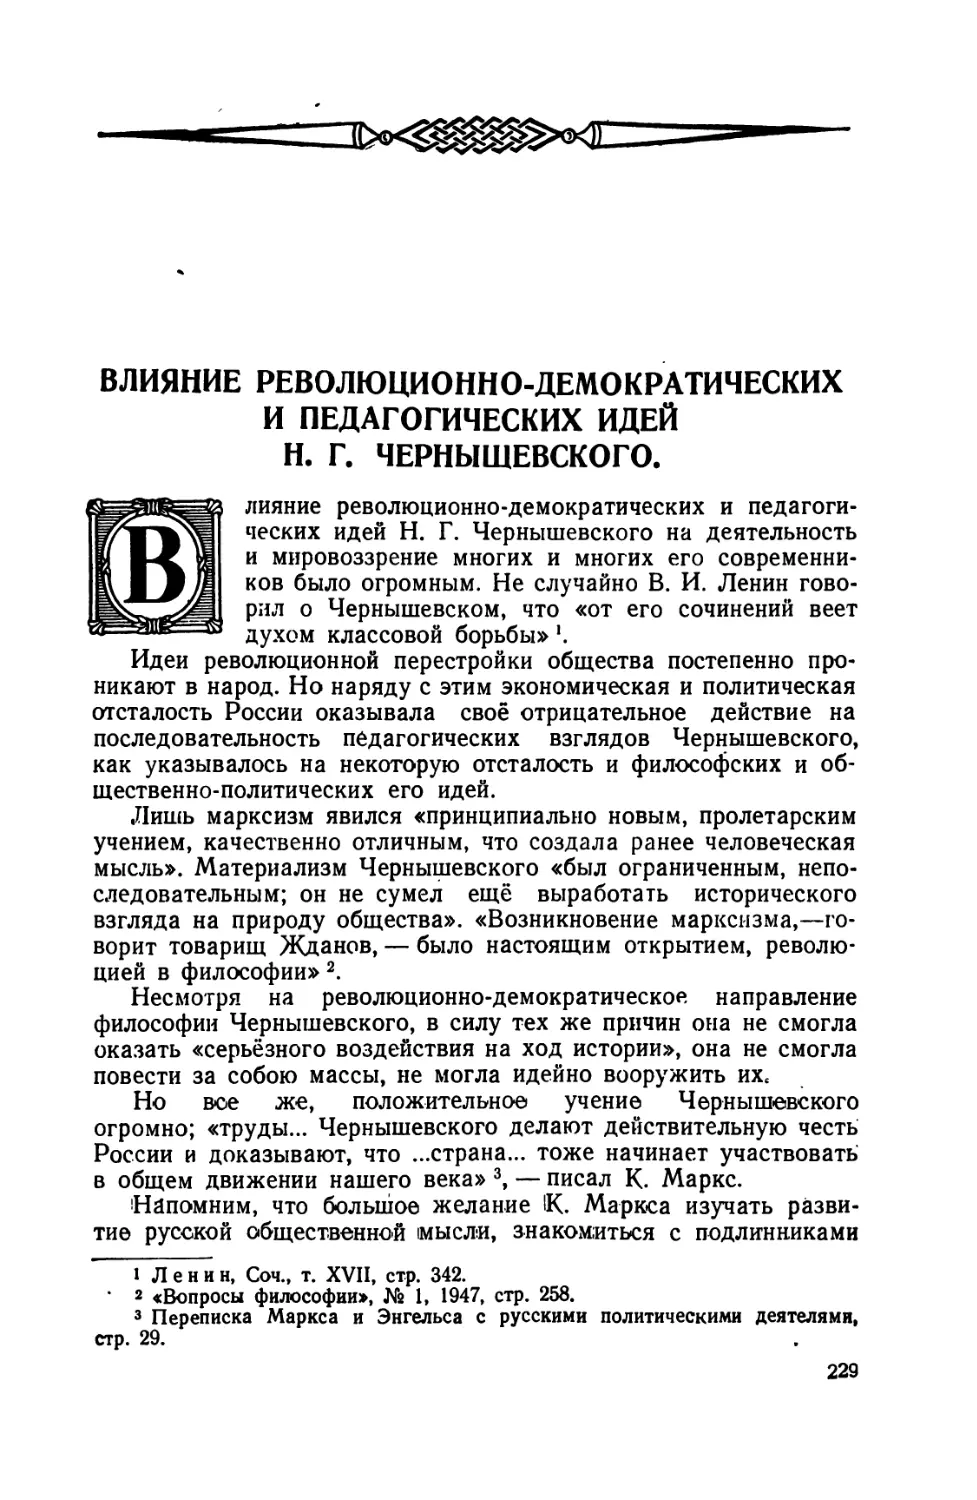 Влияние  революционно-демократических  и  педагогических  идей Н.Г. Чернышевского